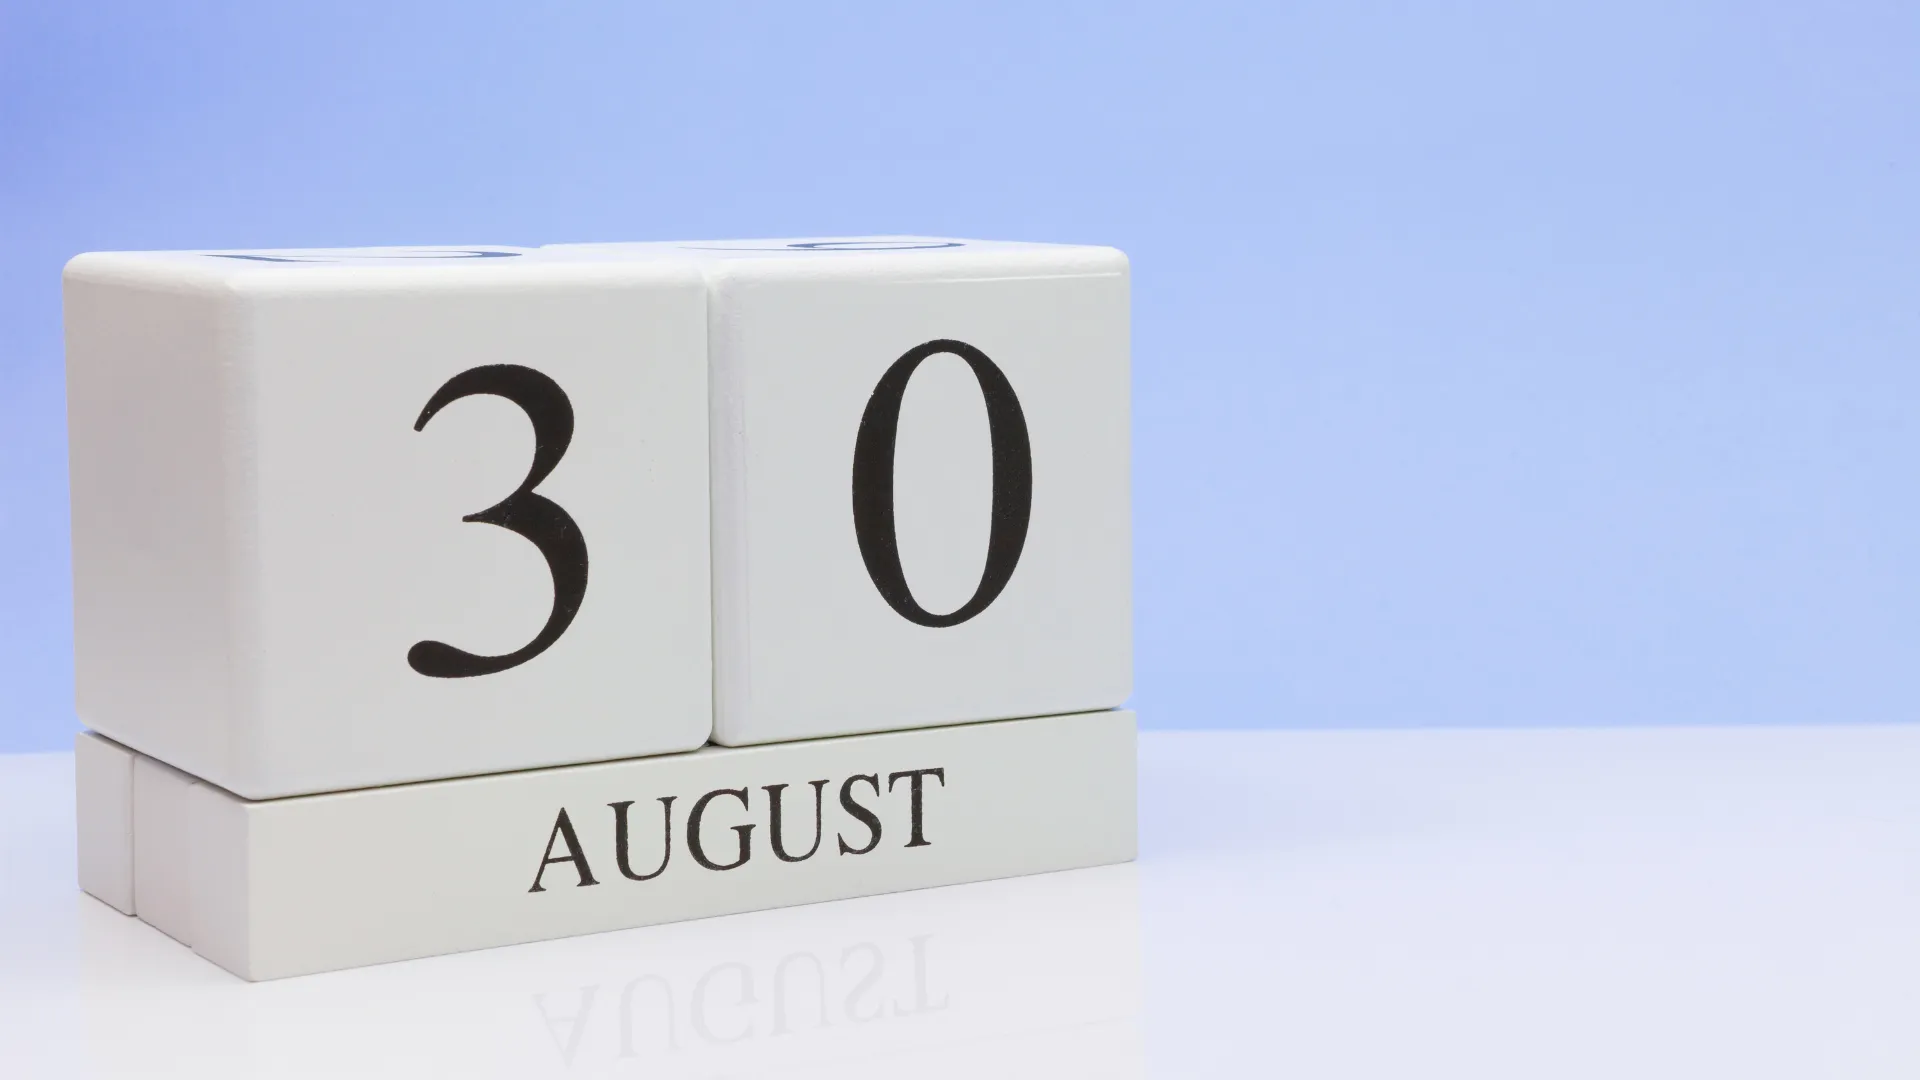 Frist for årsregnskap og generalforsamling utsettes til 30. august